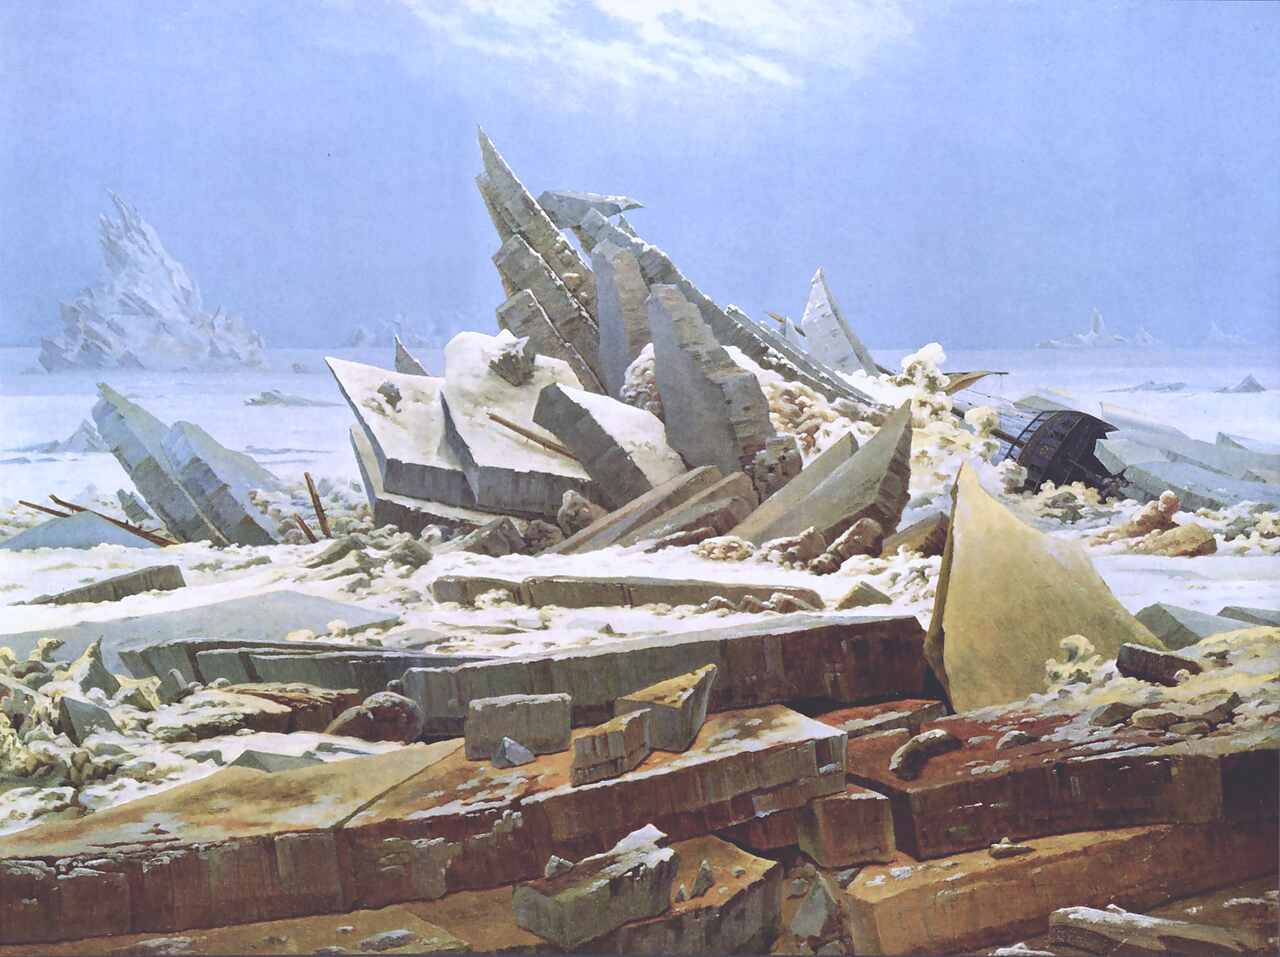 Pintura "O Naufrágio da Esperança", também conhecida como "O Mar de Gelo", do pintor alemão Caspar David Friedrich. Ilustrando o poema "Fatalidade", de Castro Alves.